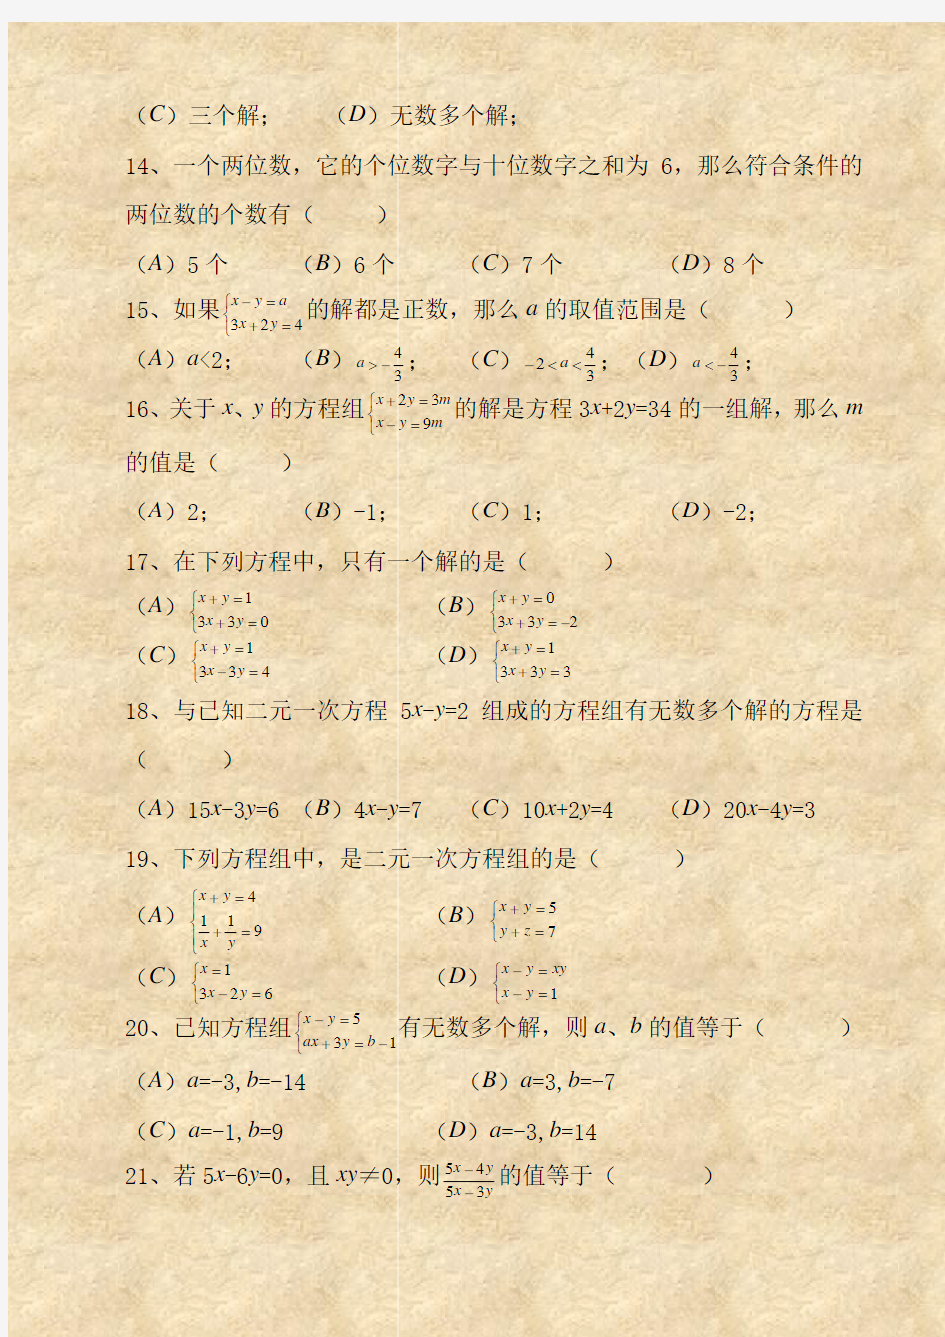 二元一次方程组经典练习题+答案解析100道 (1)